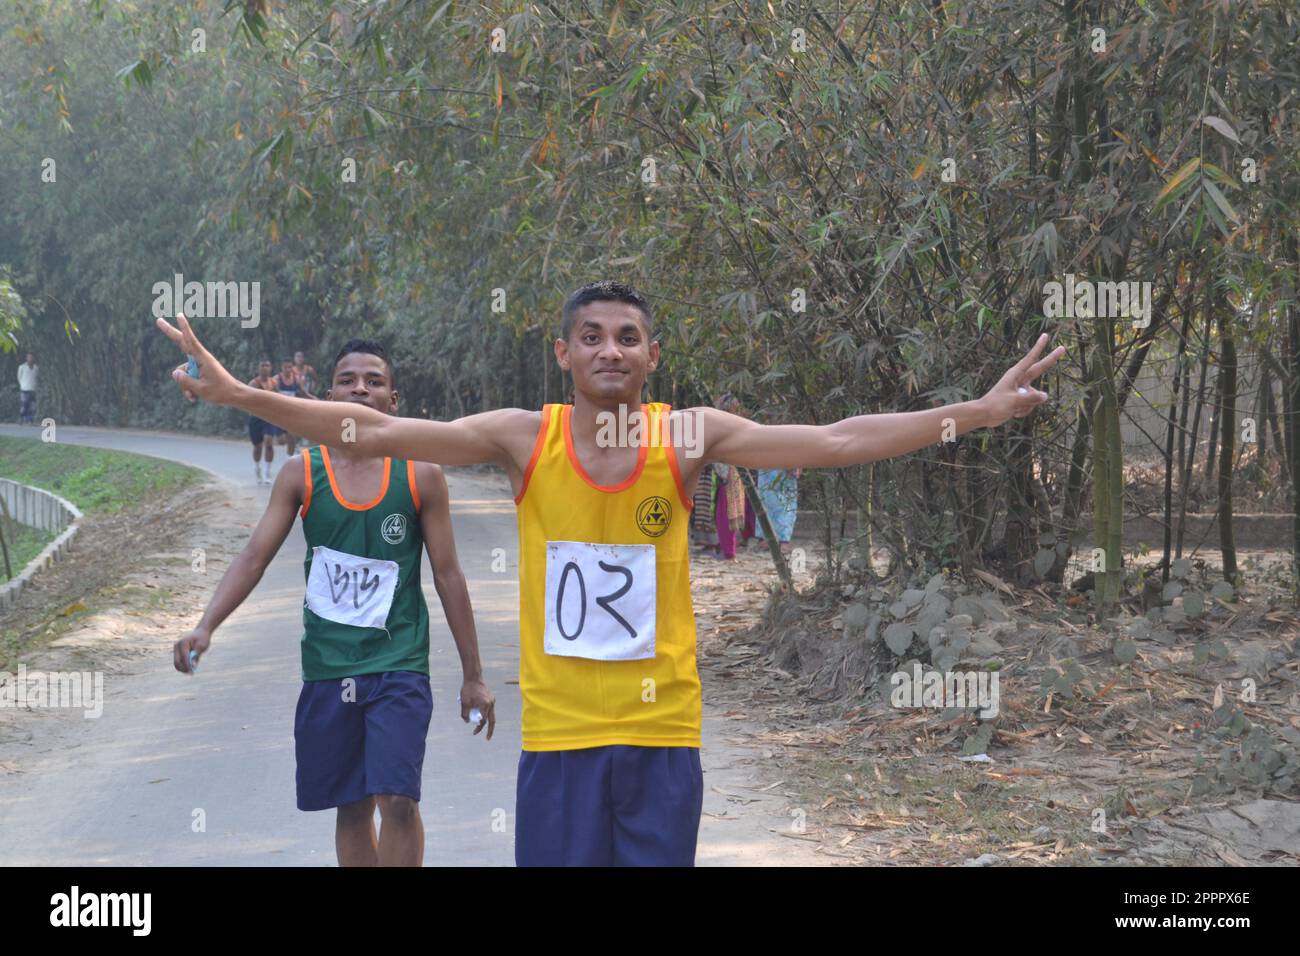 Inter-House Cross-Country-Running-Wettbewerb der Studenten des Rangpur Cadet College. Stockfoto